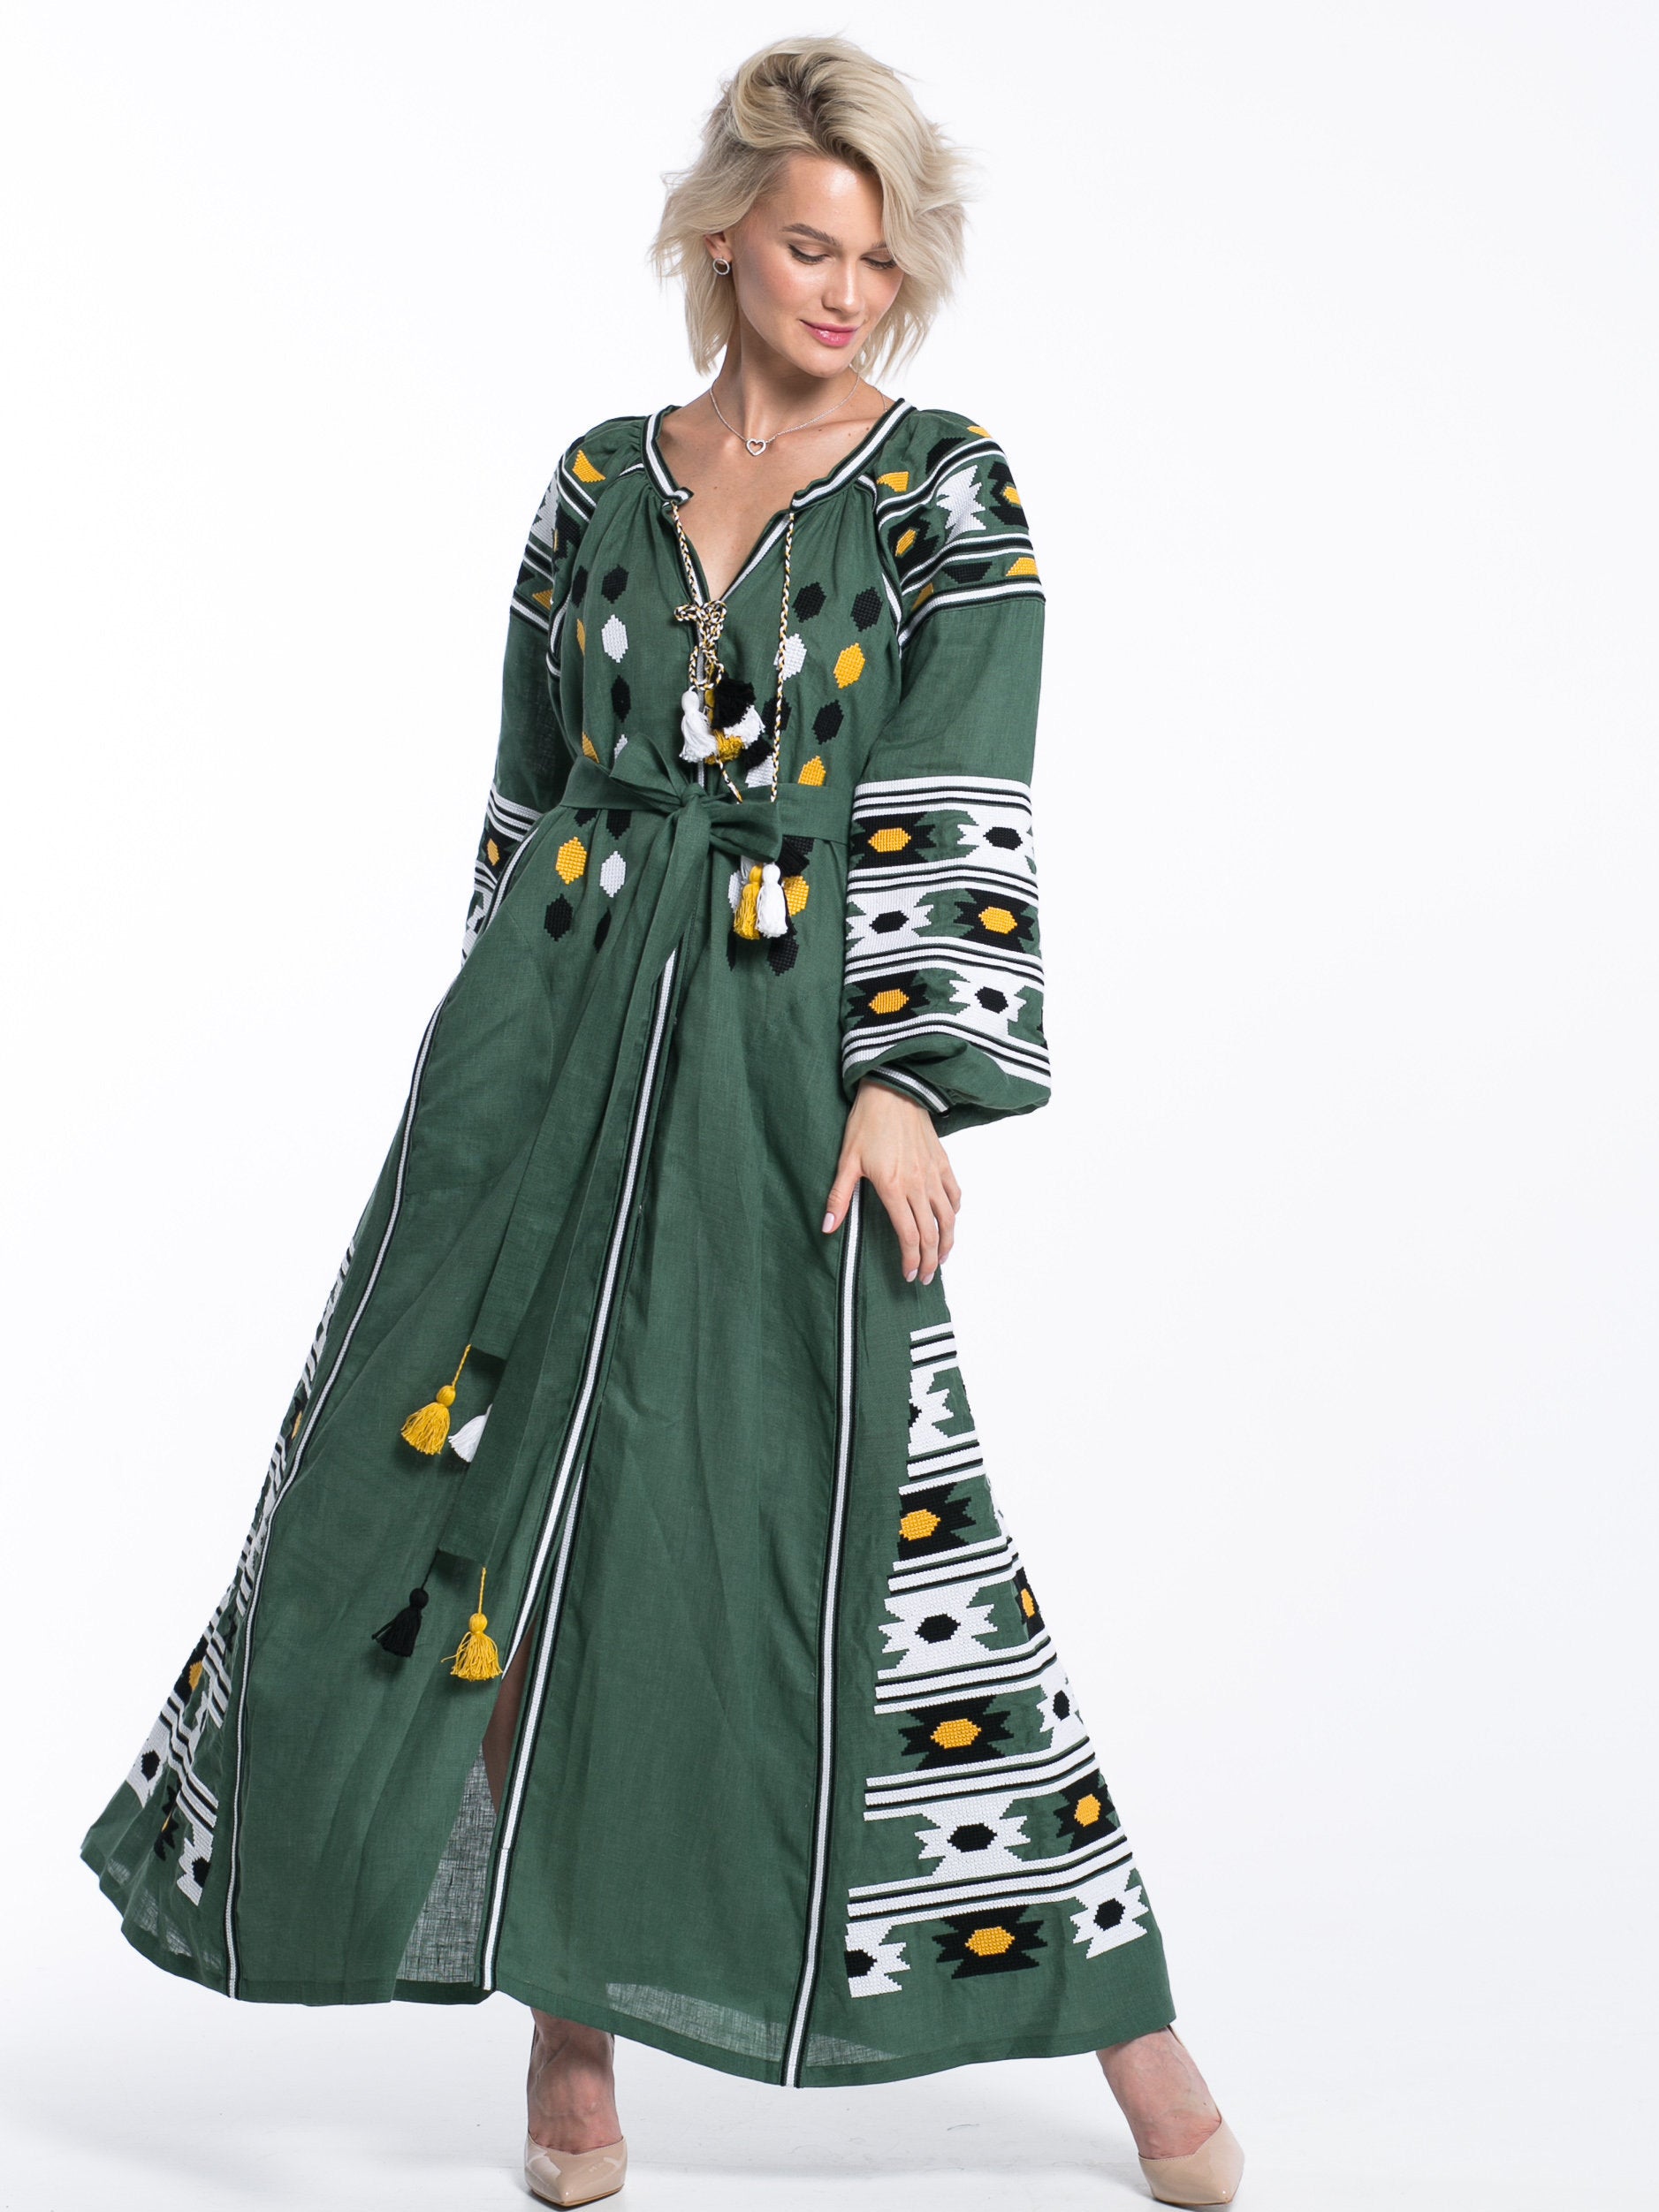 Summer Embroidered Dress Green Linen